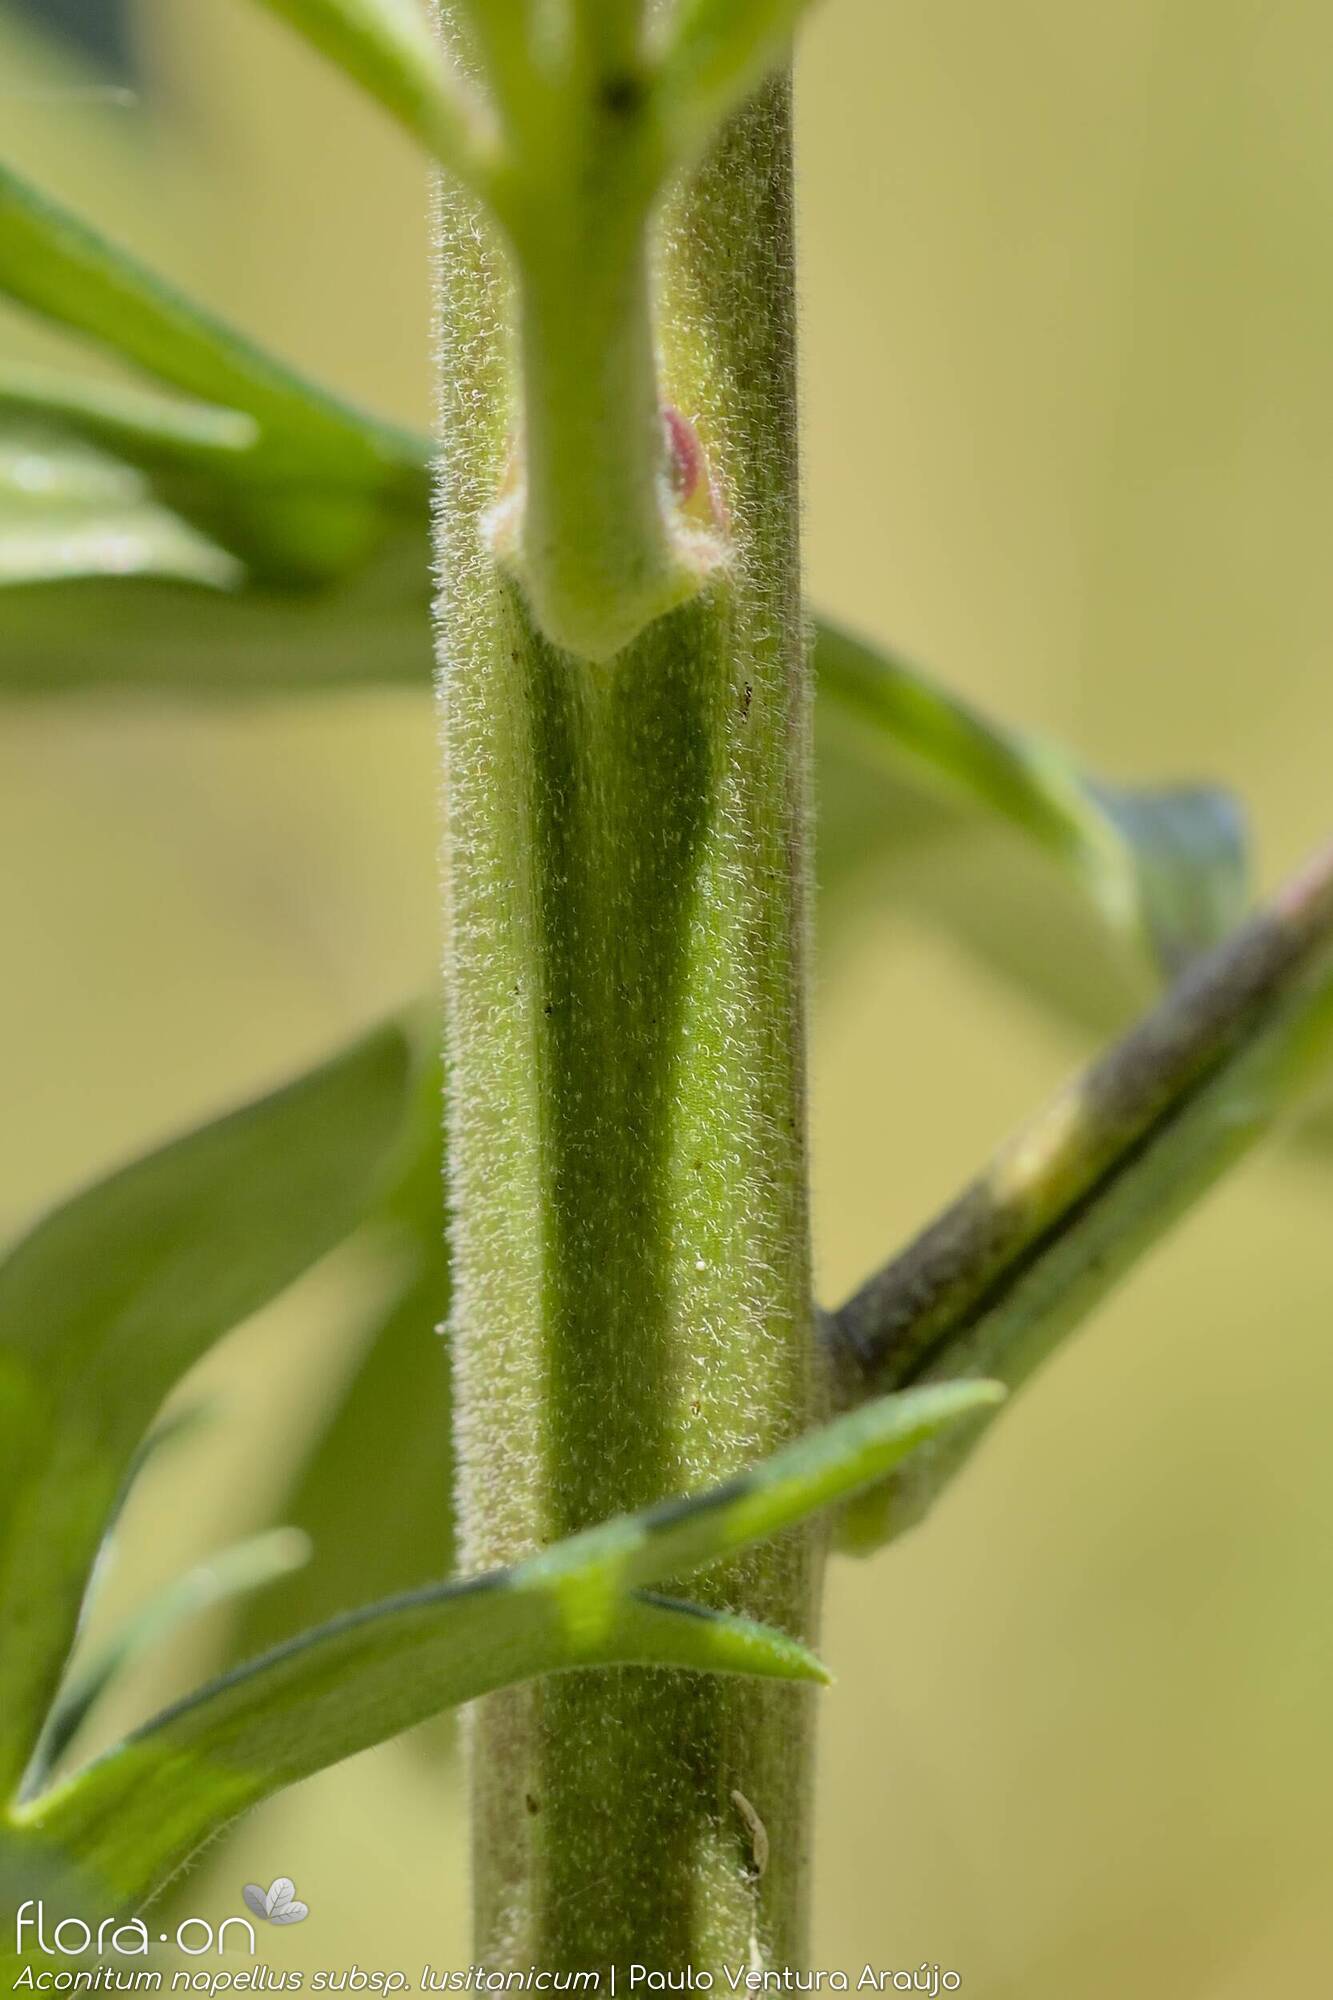 Aconitum napellus lusitanicum - Caule | Paulo Ventura Araújo; CC BY-NC 4.0